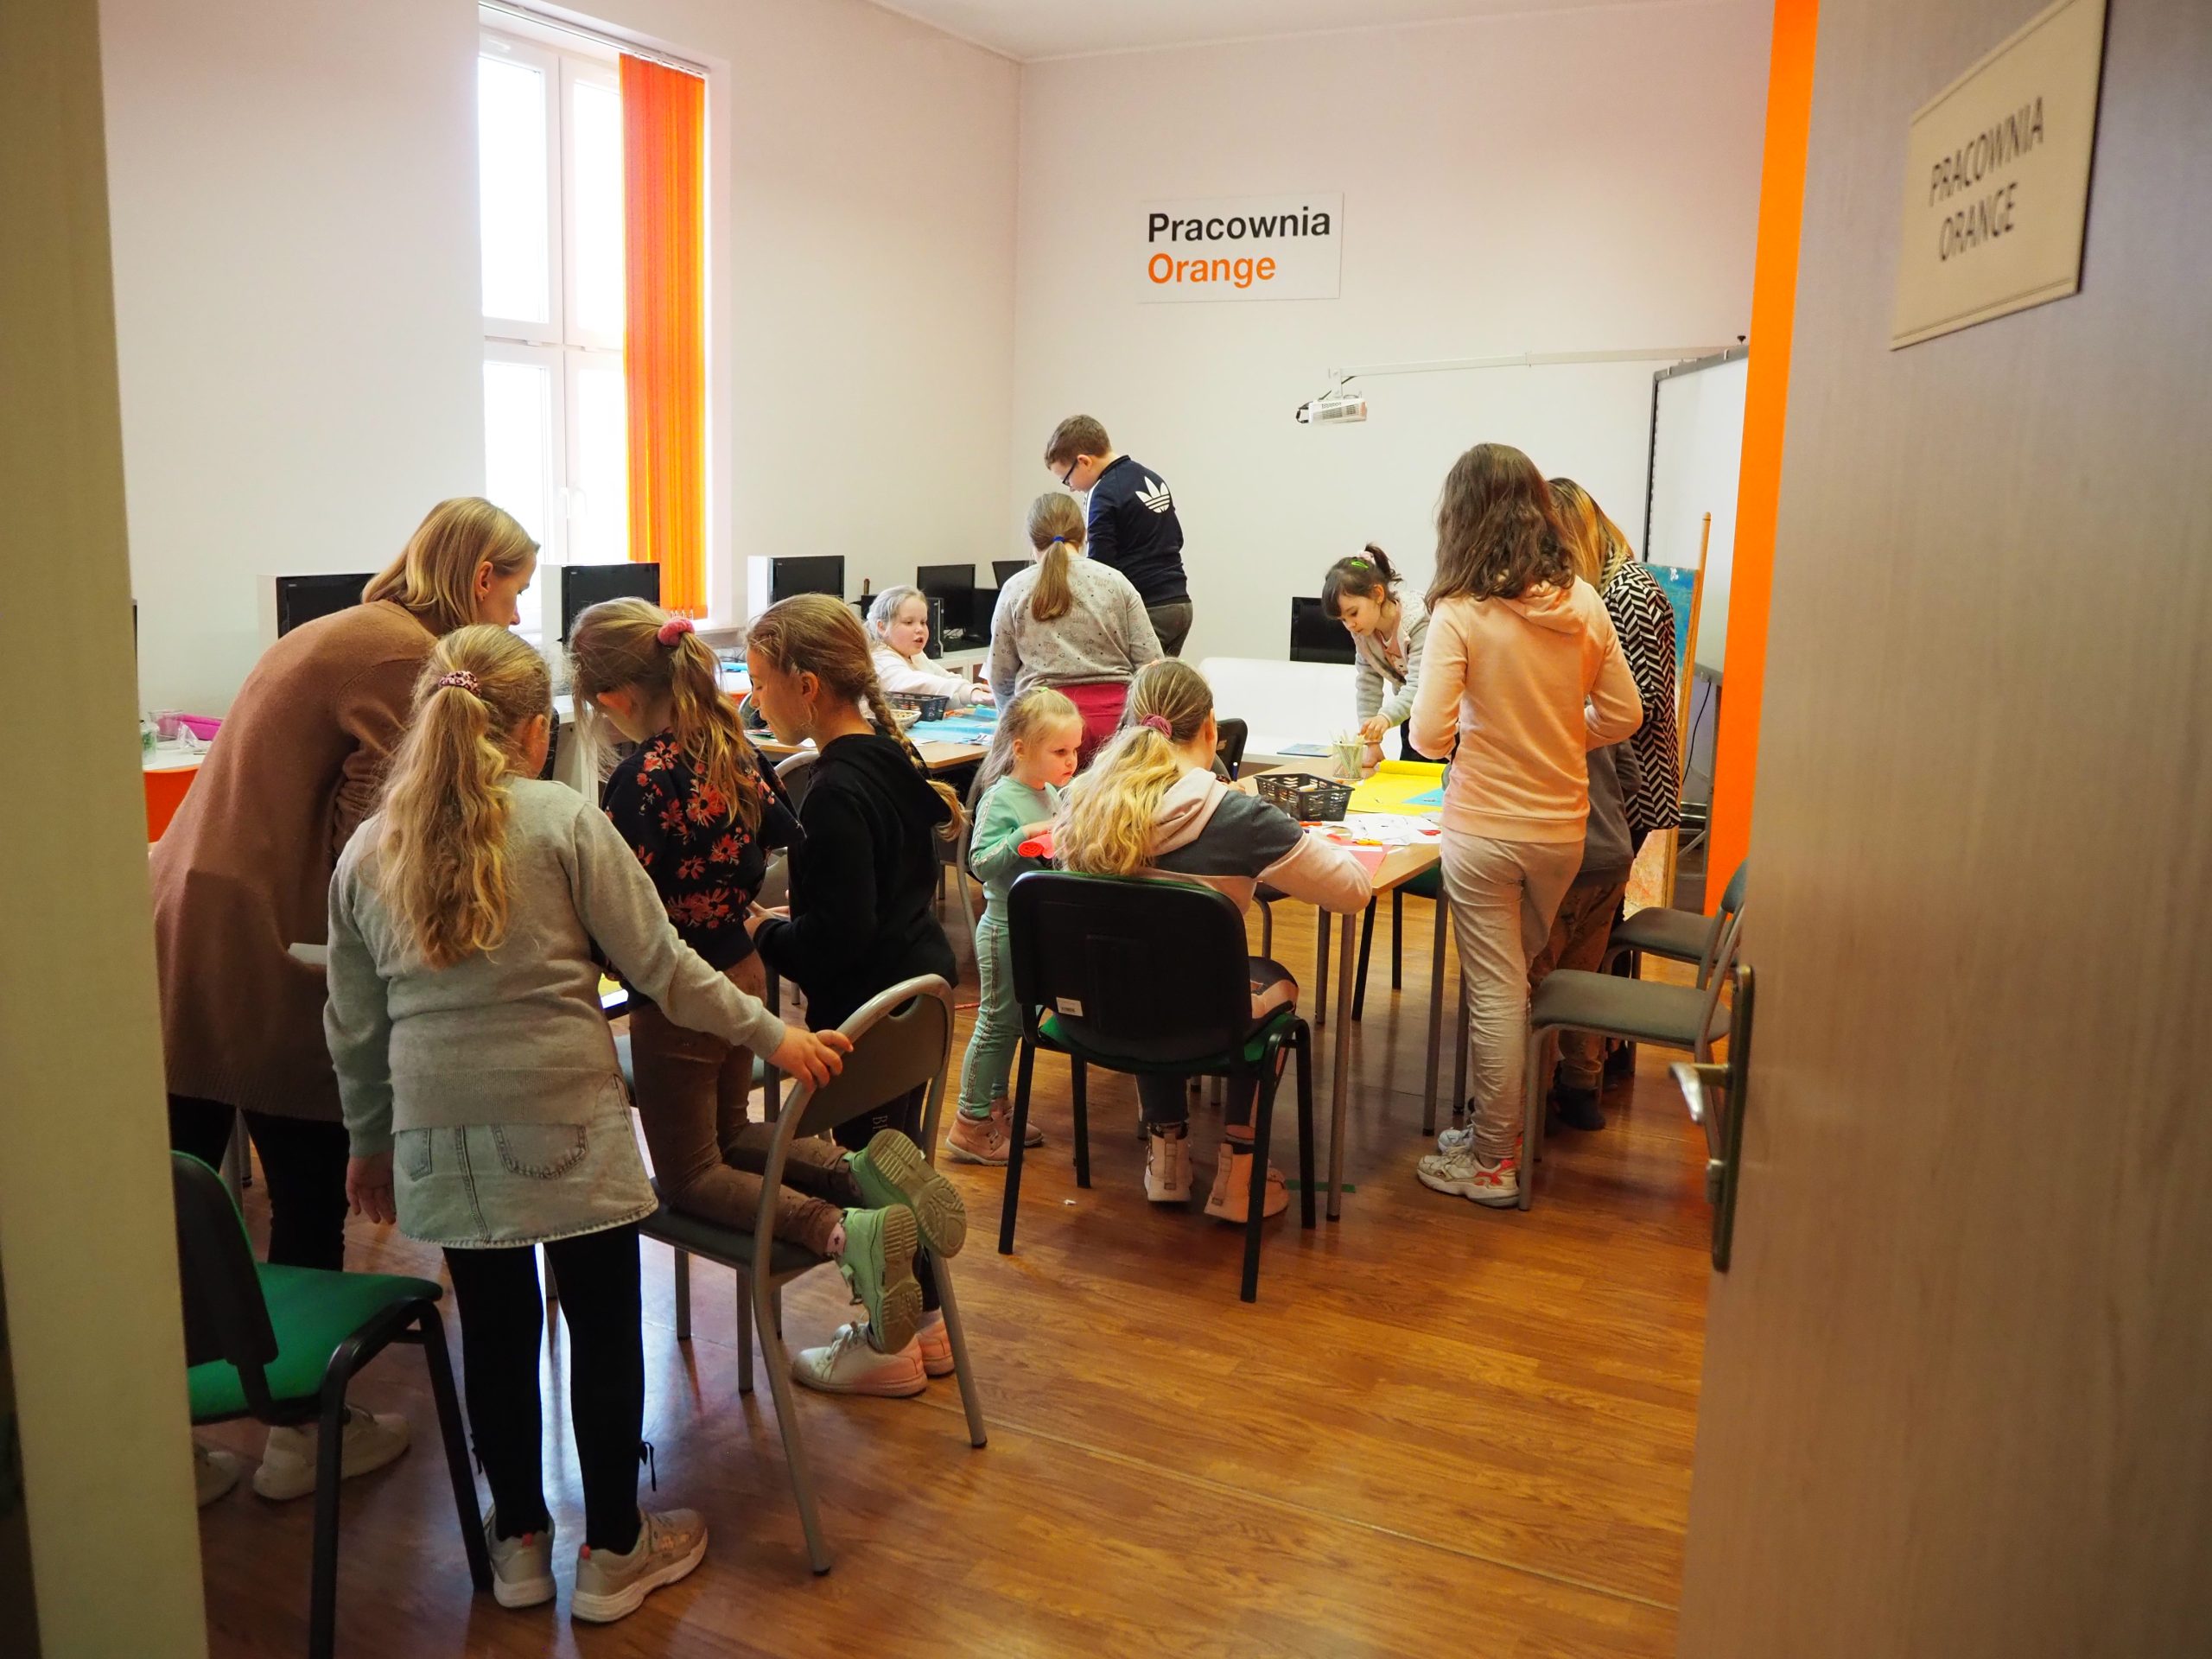 grupa dzieci przy stołach w pracowni orange integrują się razem